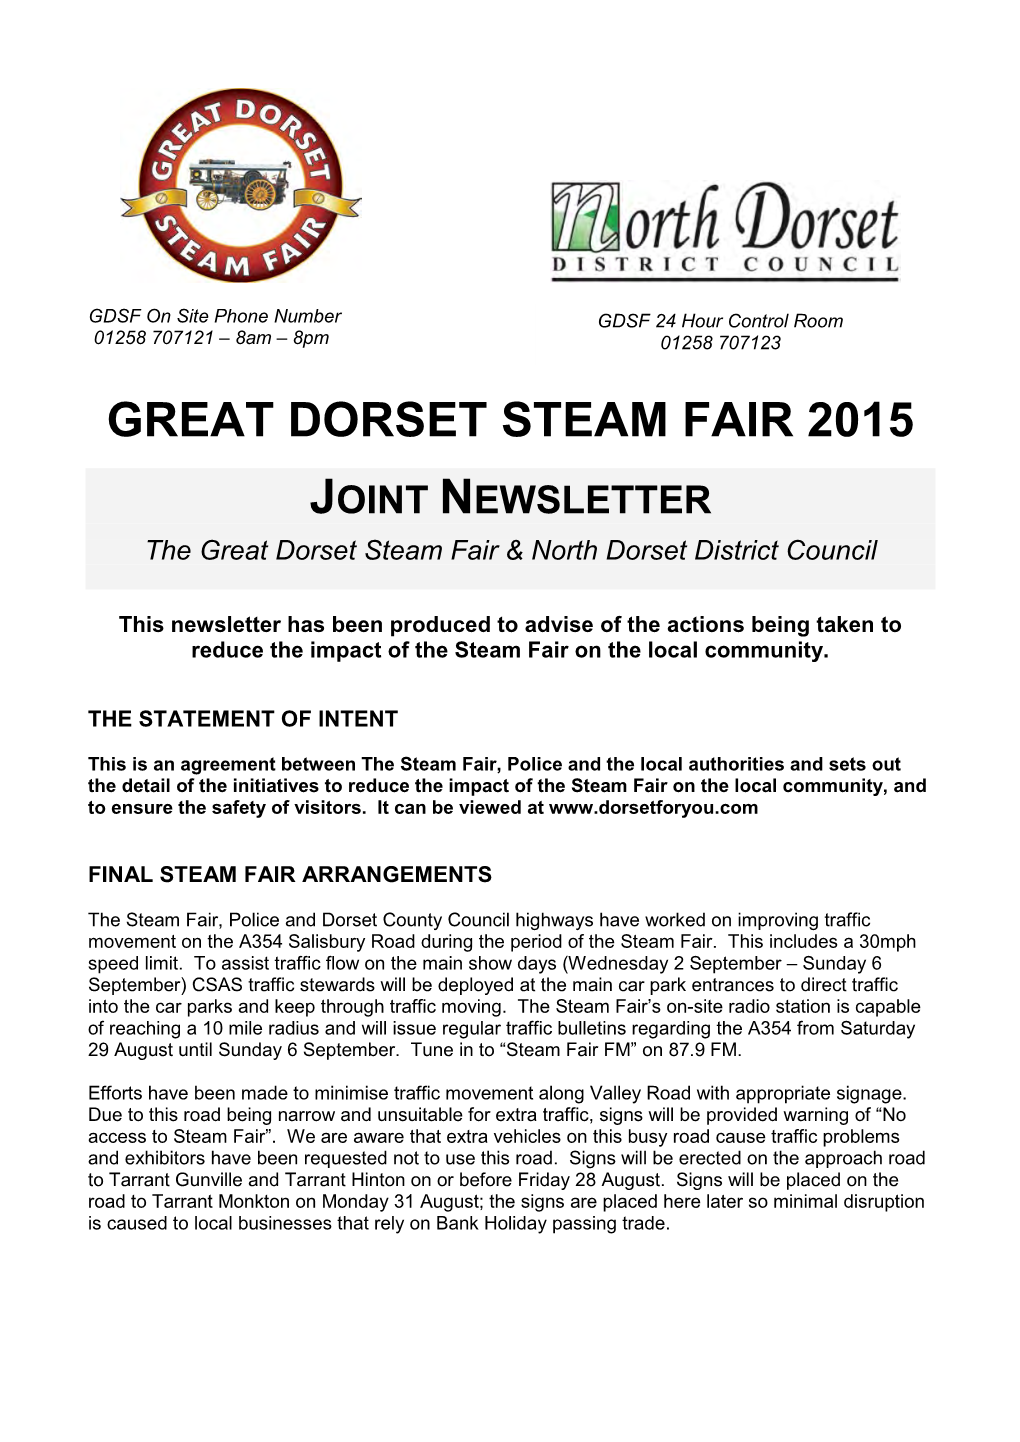 Great Dorset Steam Fair 2015